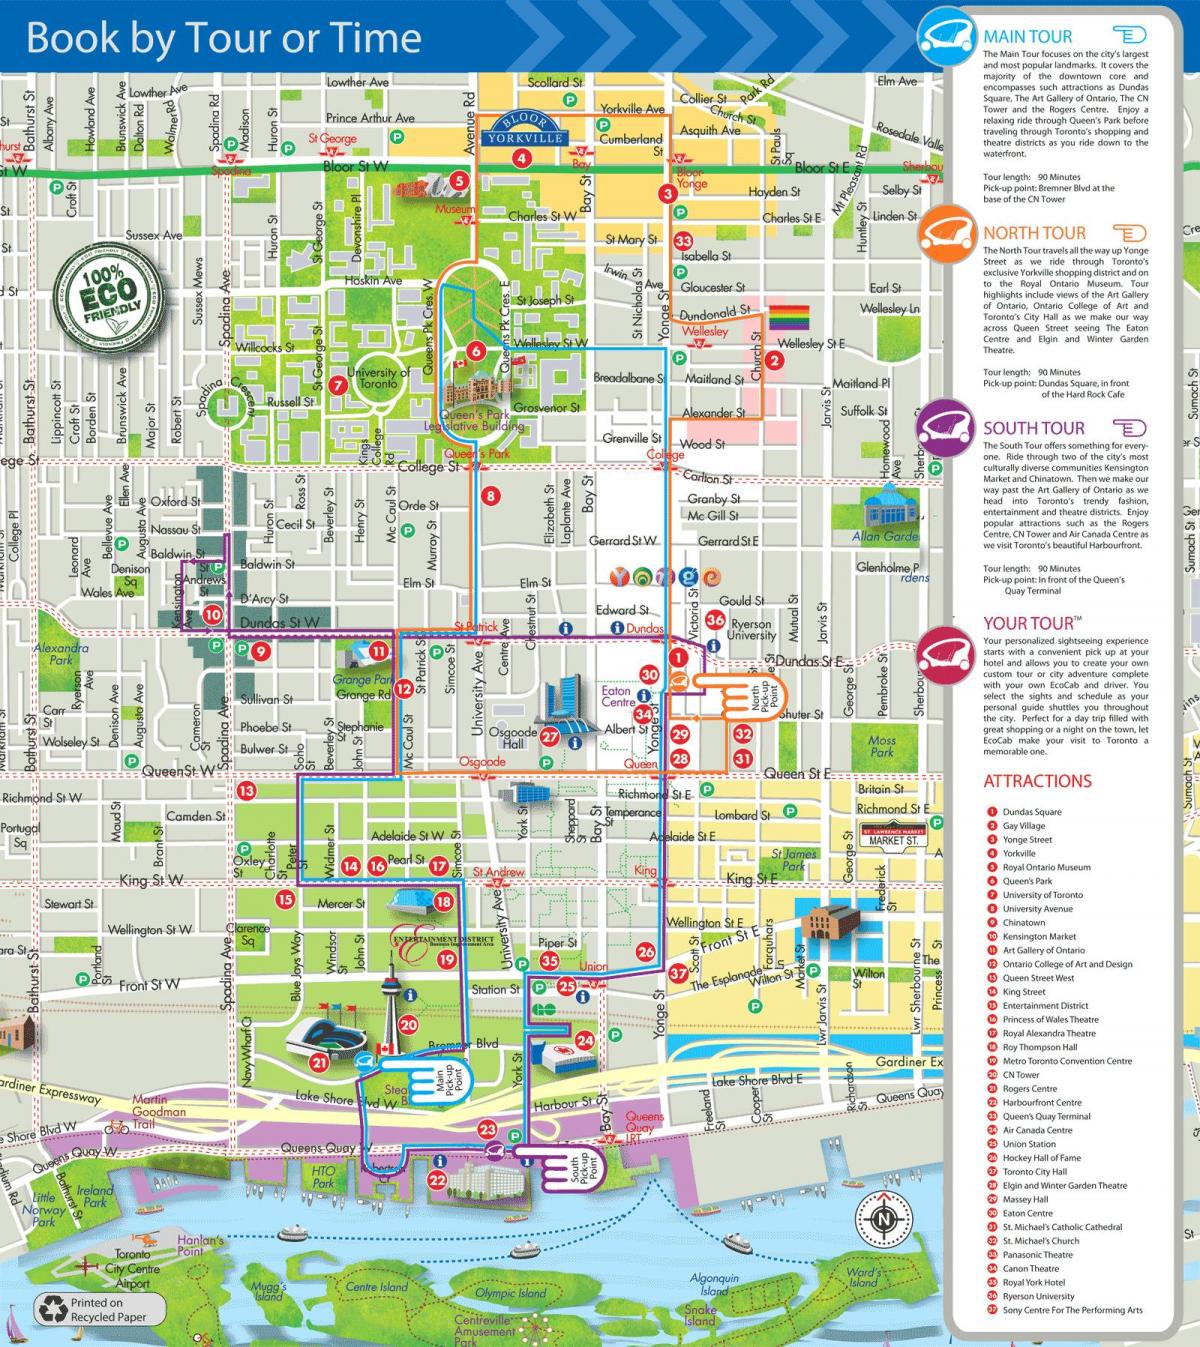 نقشه از محیط زیست کابین تورهای تورنتو